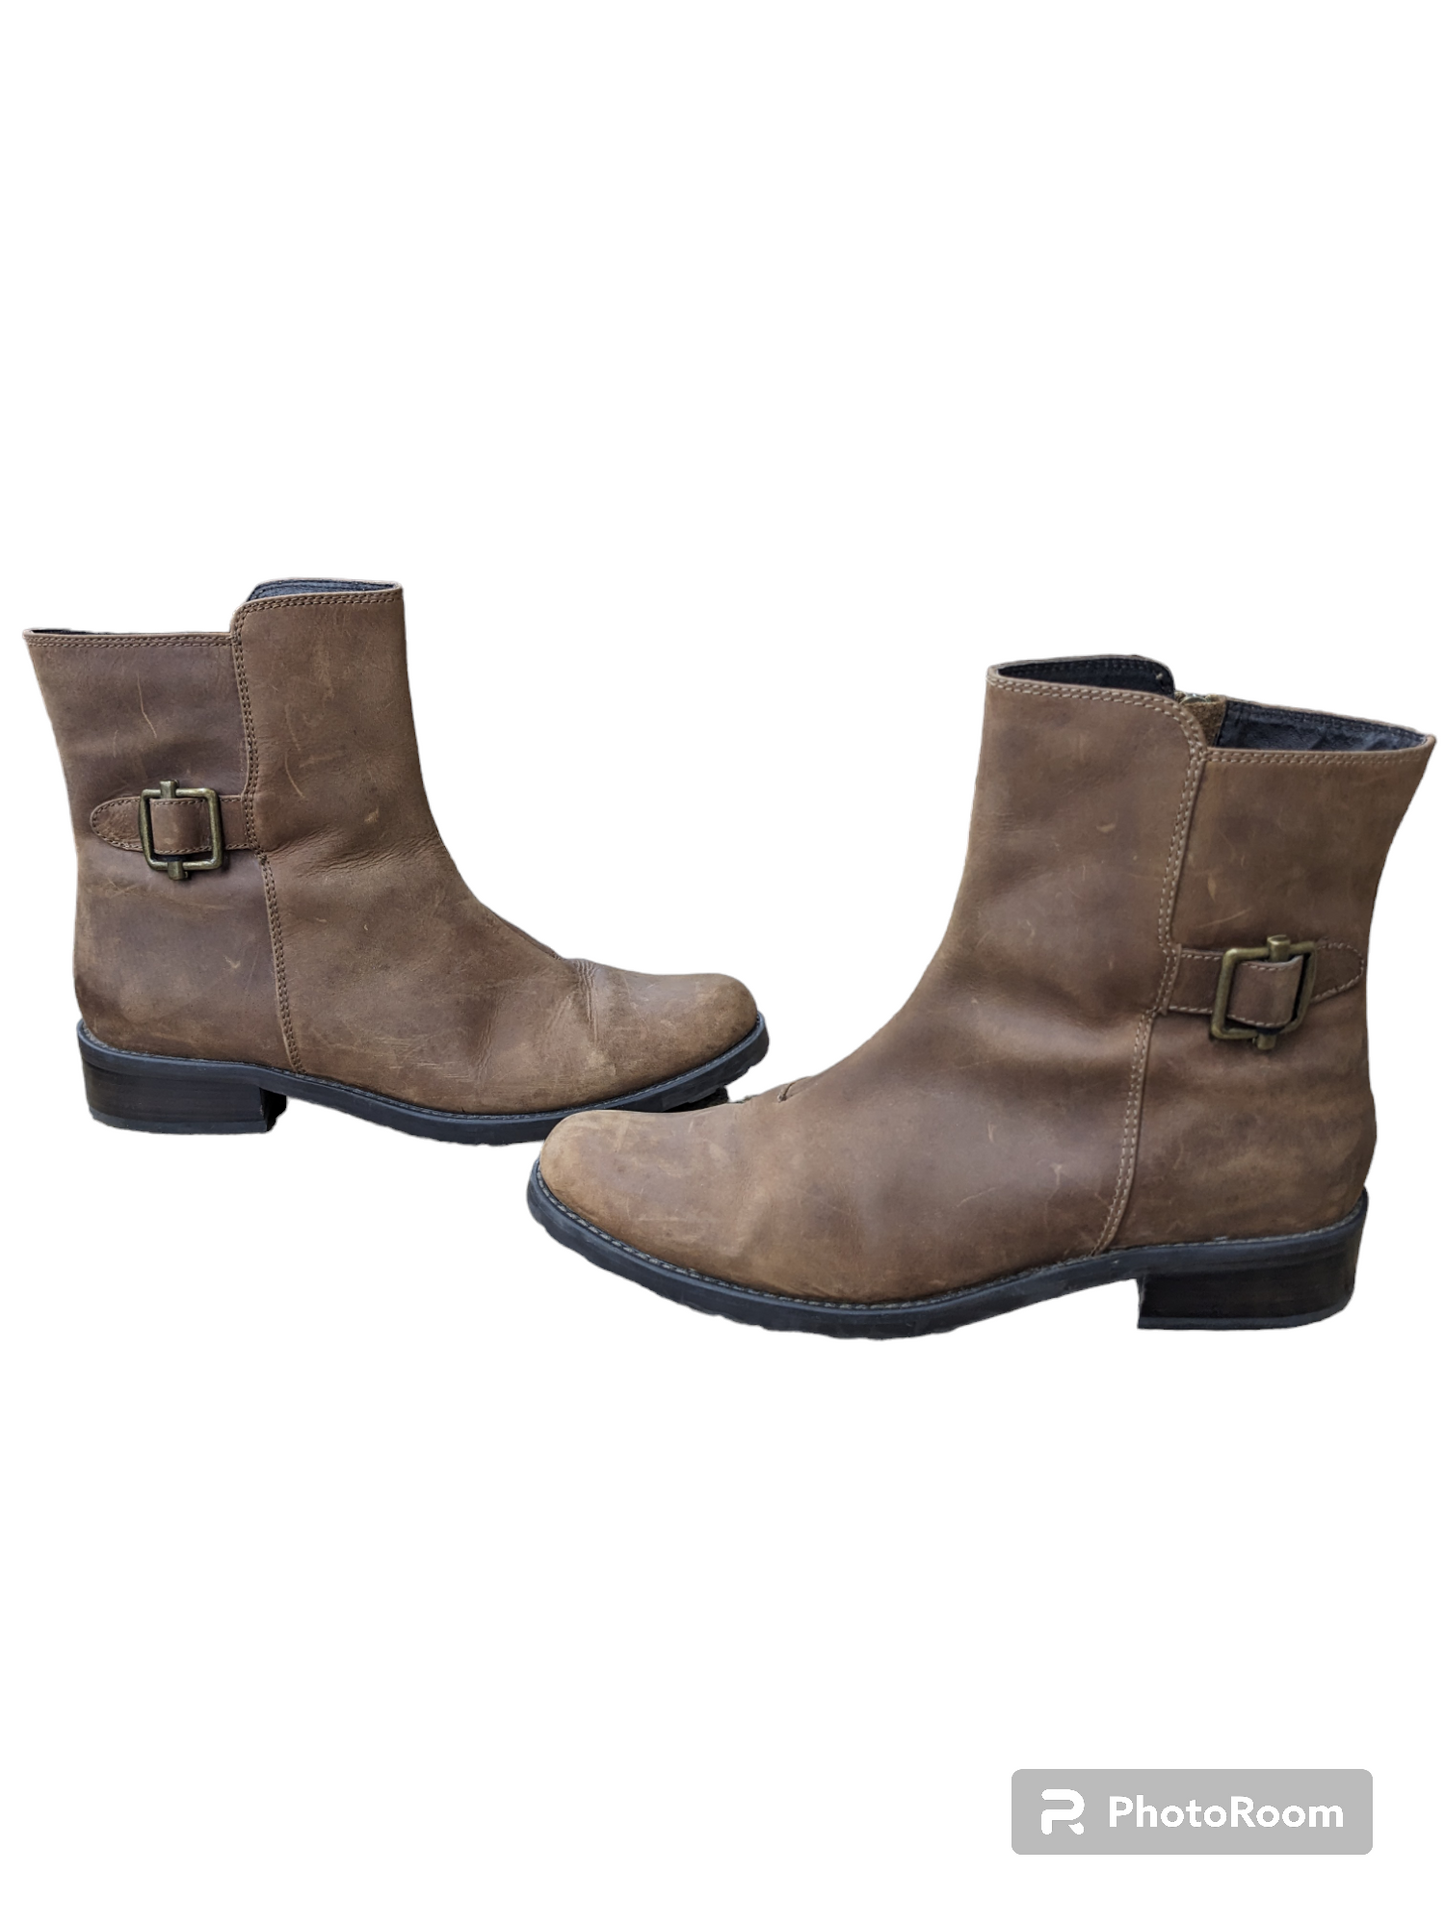 Boots Western By Eddie Bauer  Size: 11